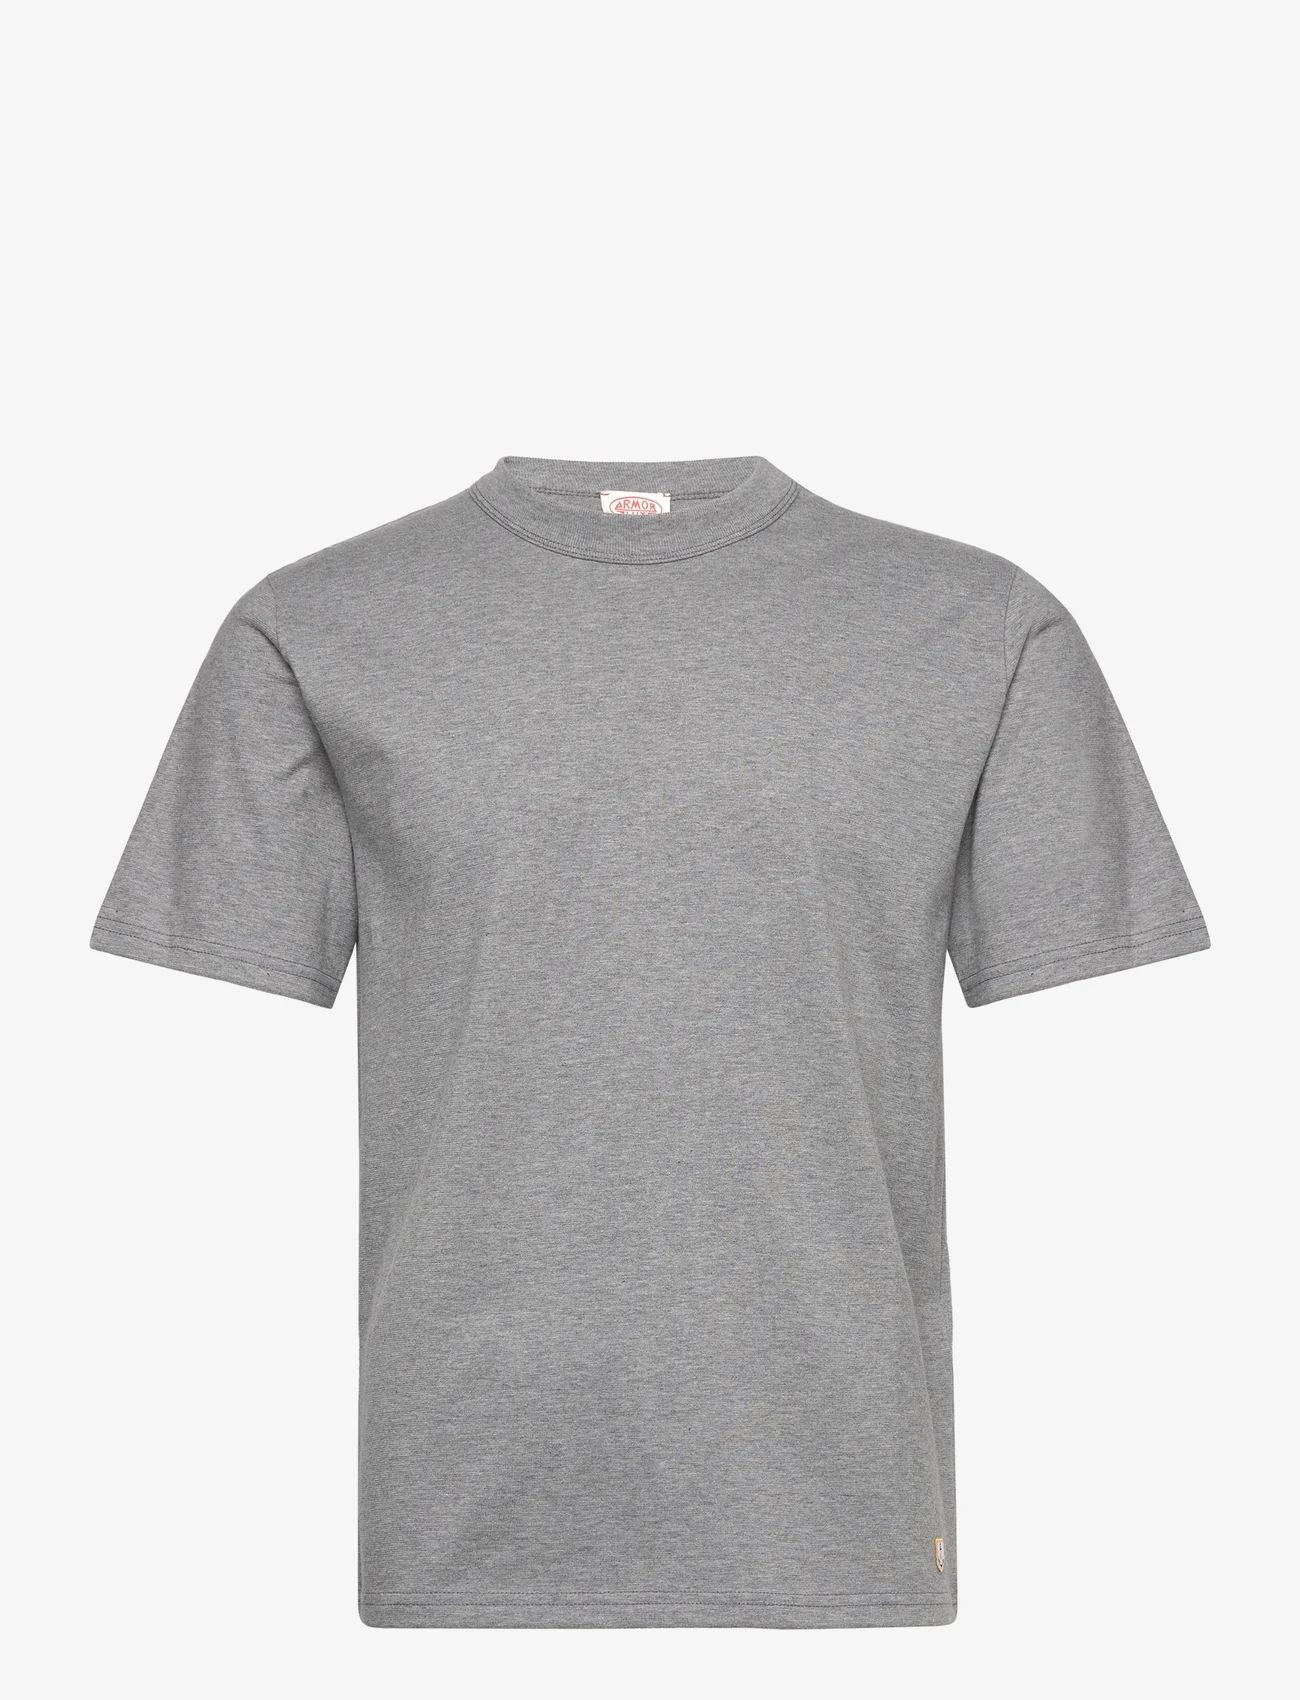 Armor Lux - Basic T-shirt "Callac" Héritage - misty grey - 0